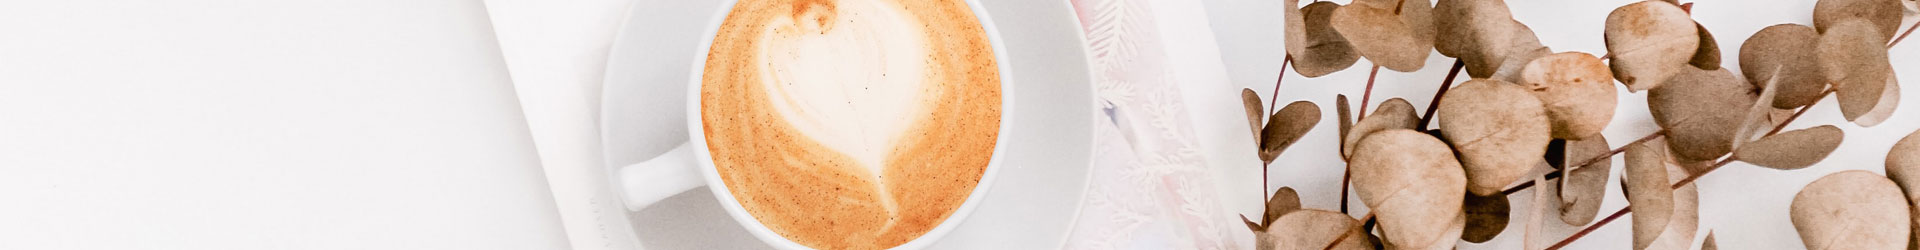 Latte-Art-Herz Cappuccino in weißer Kaffeetasse auf weißer Untertasse daneben Deko-Blätter